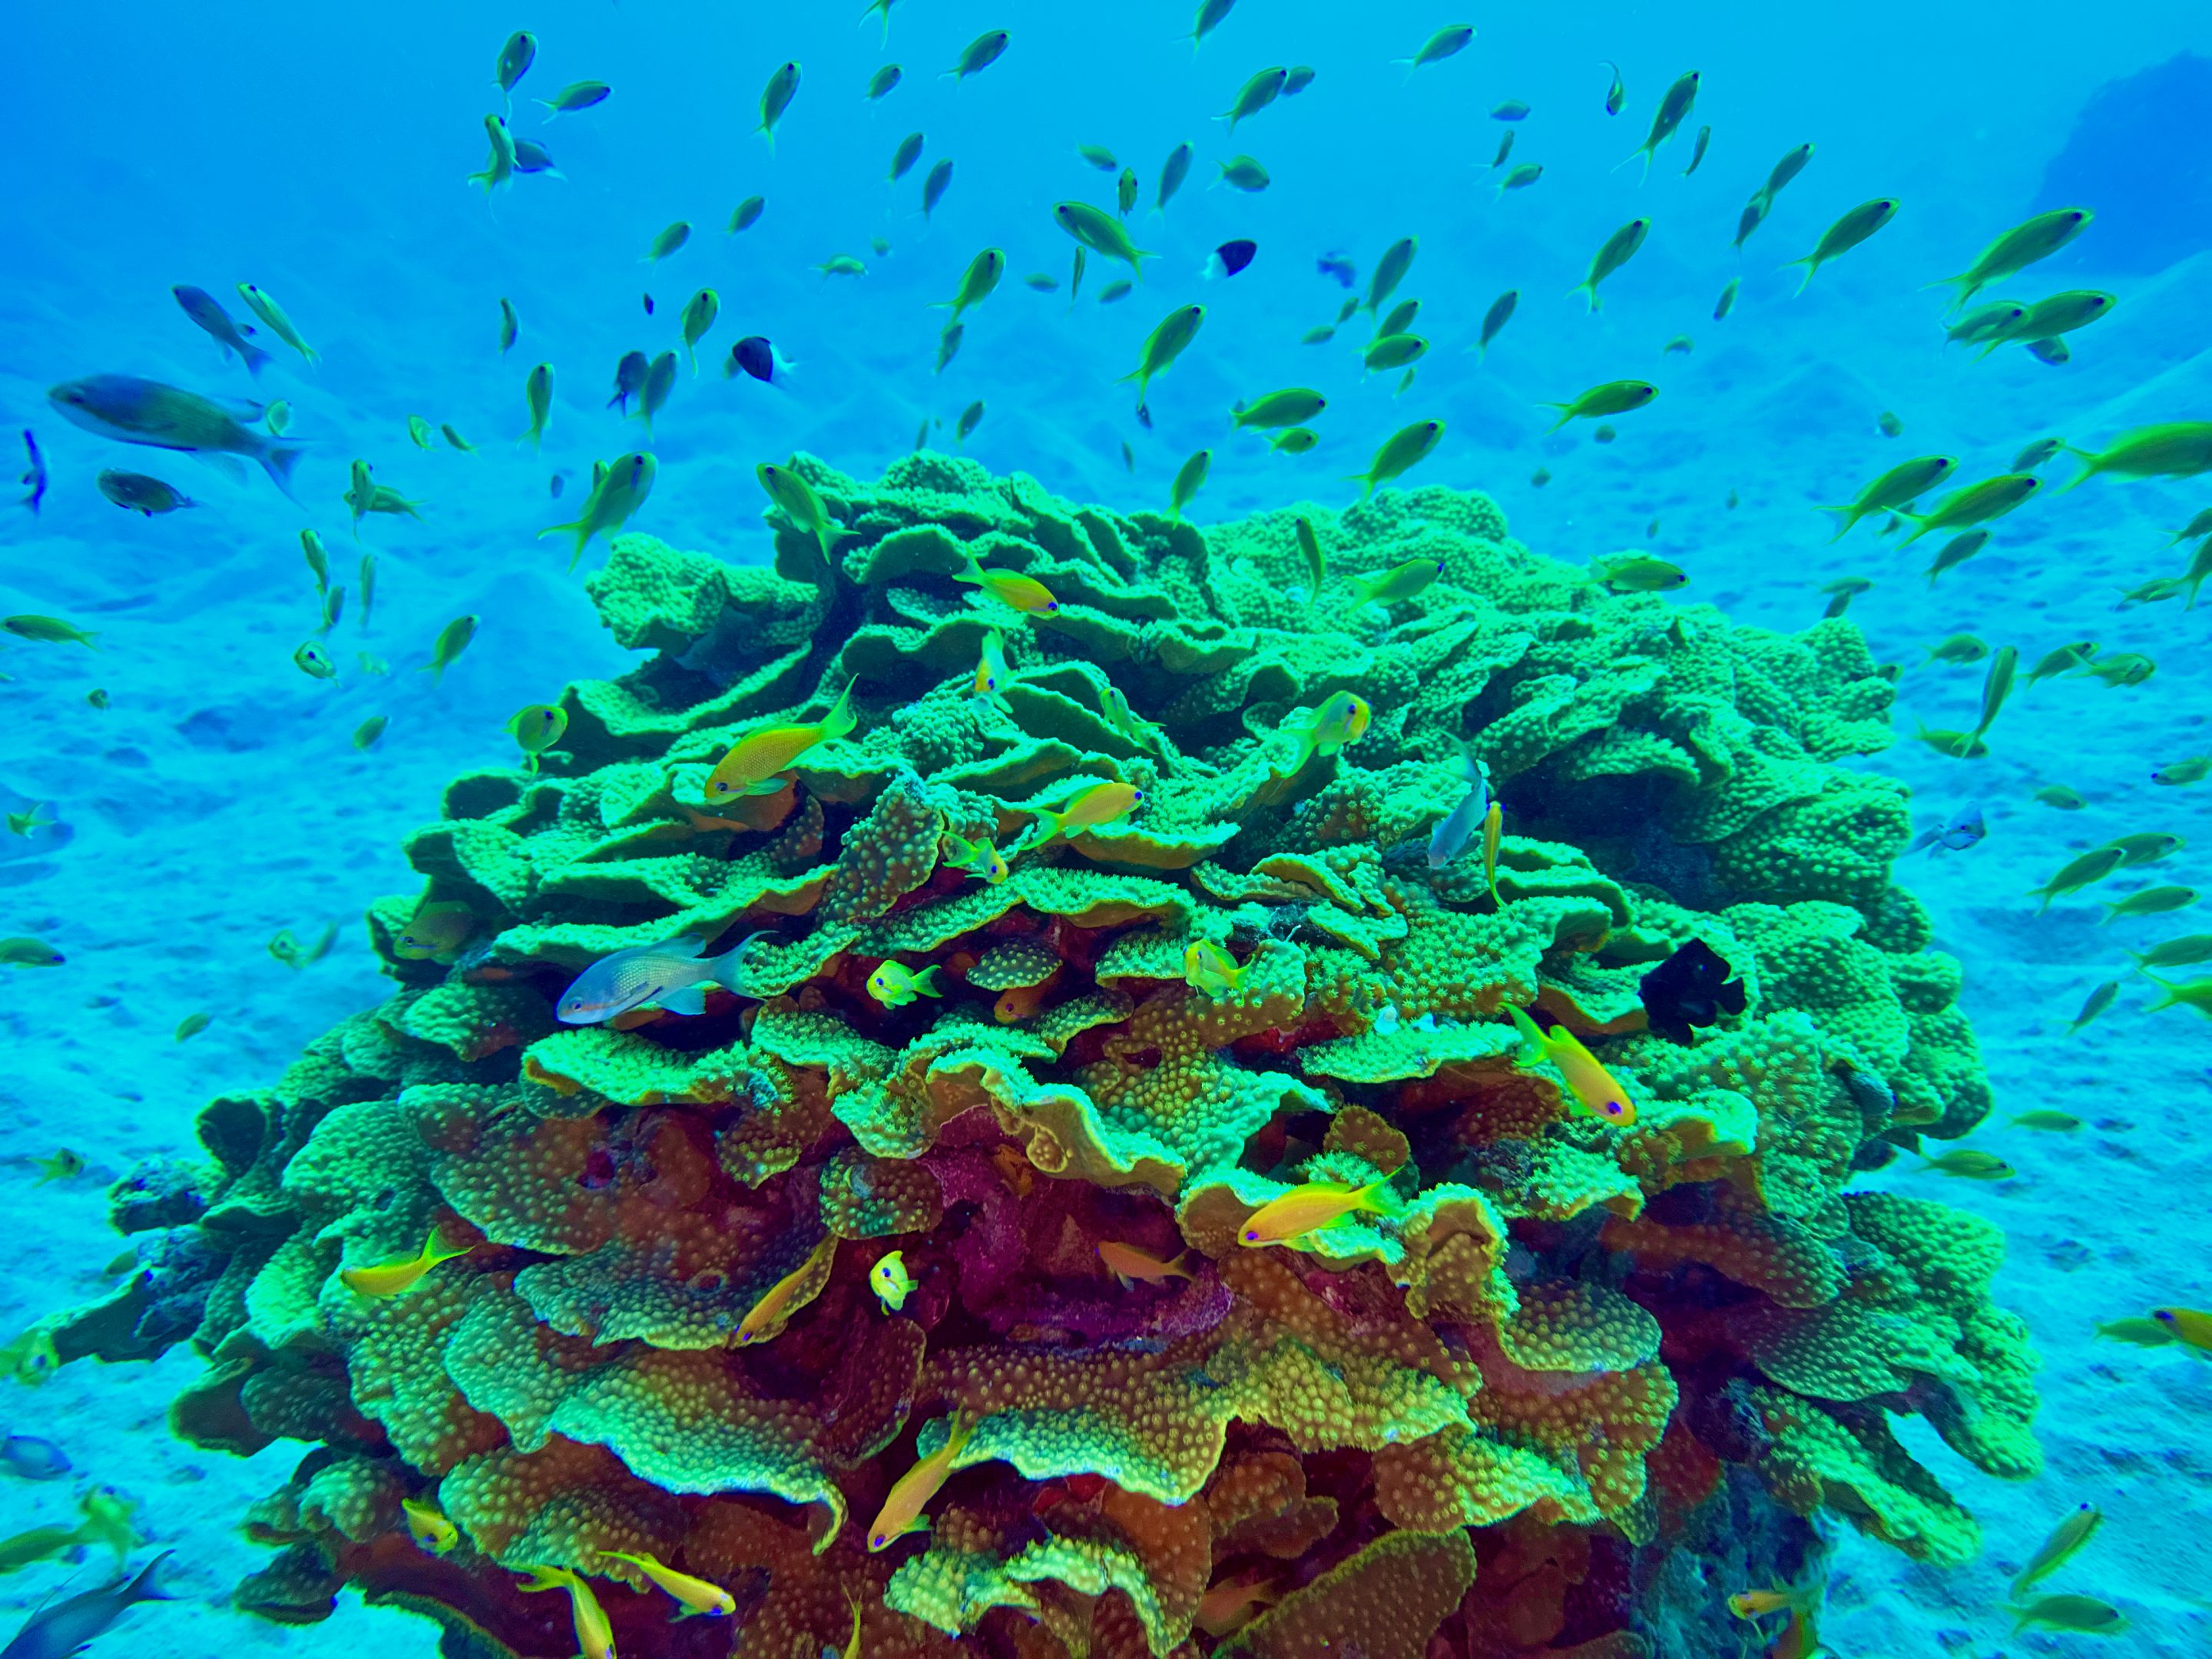 Abu Dabbab offre un mondo sottomarino incredibilmente impressionante con coralli colorati, innumerevoli pesci e tartarughe.